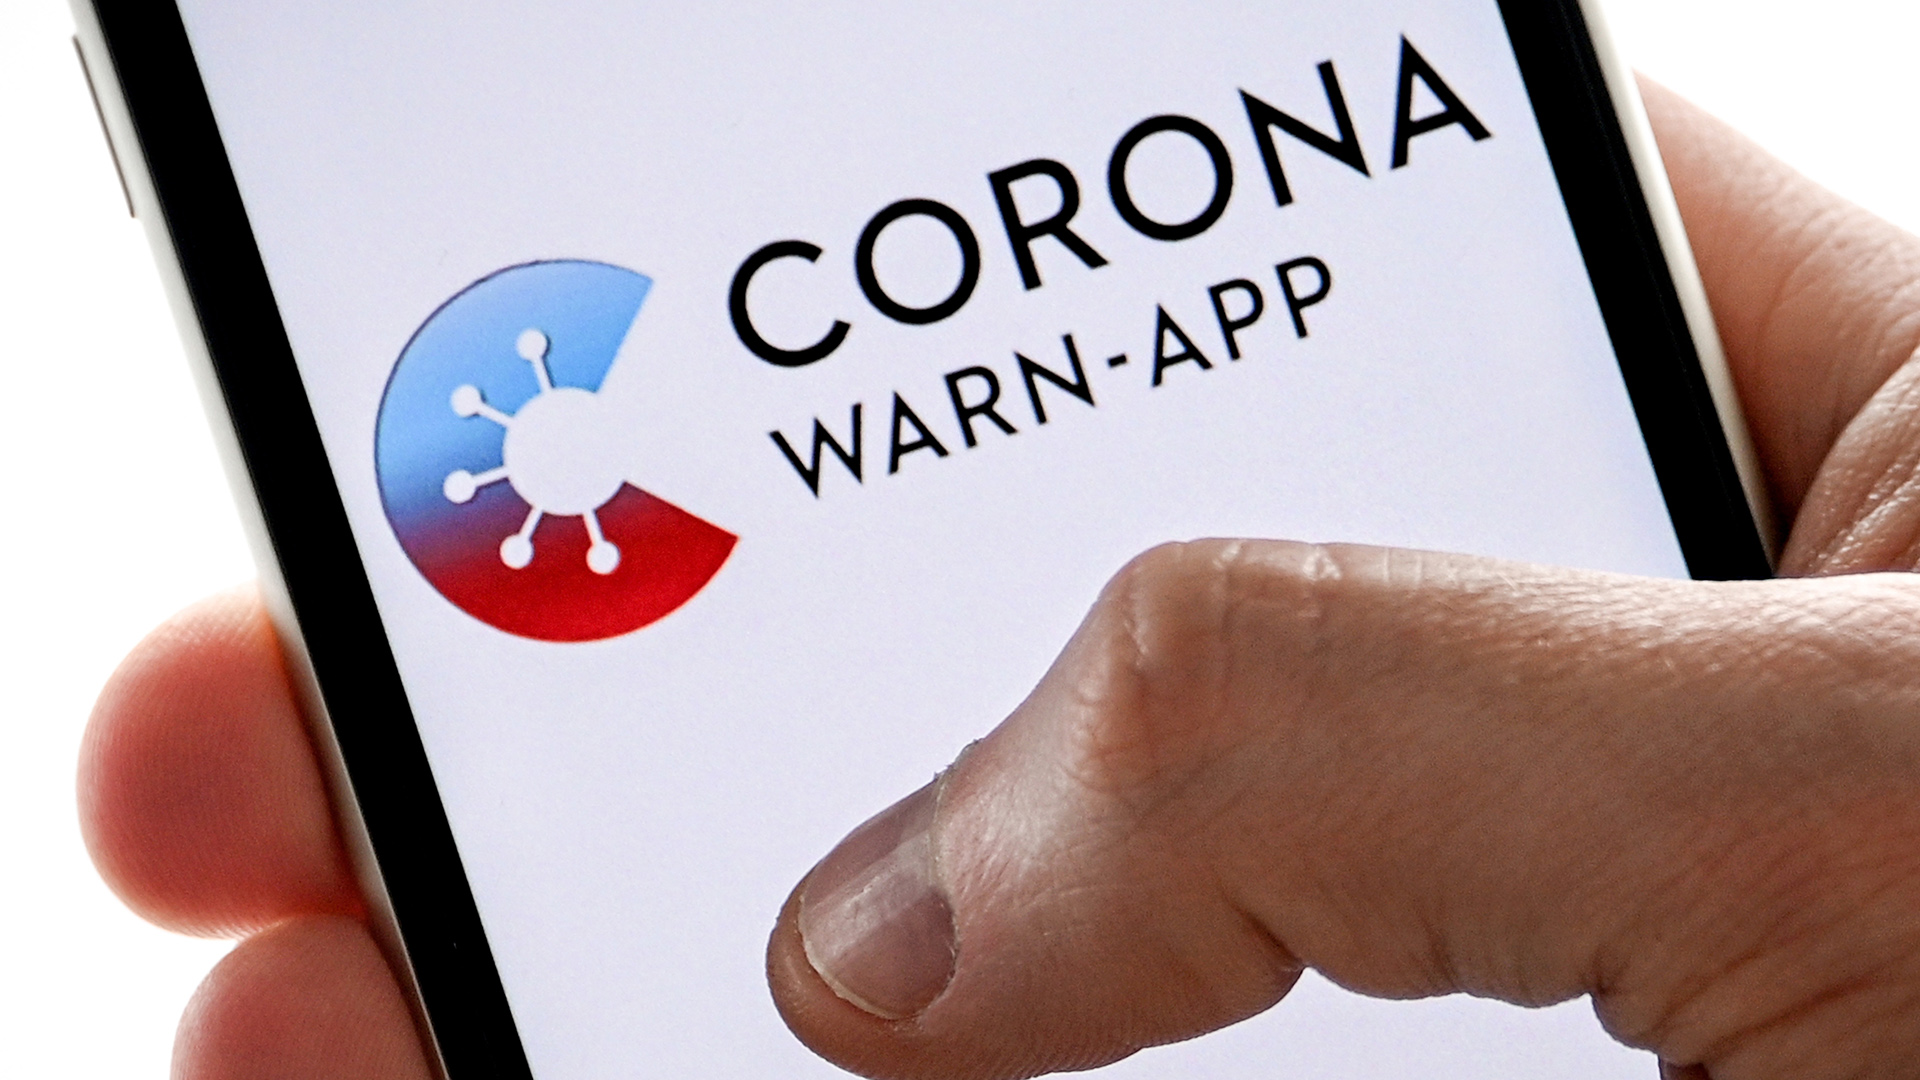 Auf einen Handydisplay ist der Schriftzug "Corona-App" zu sehen